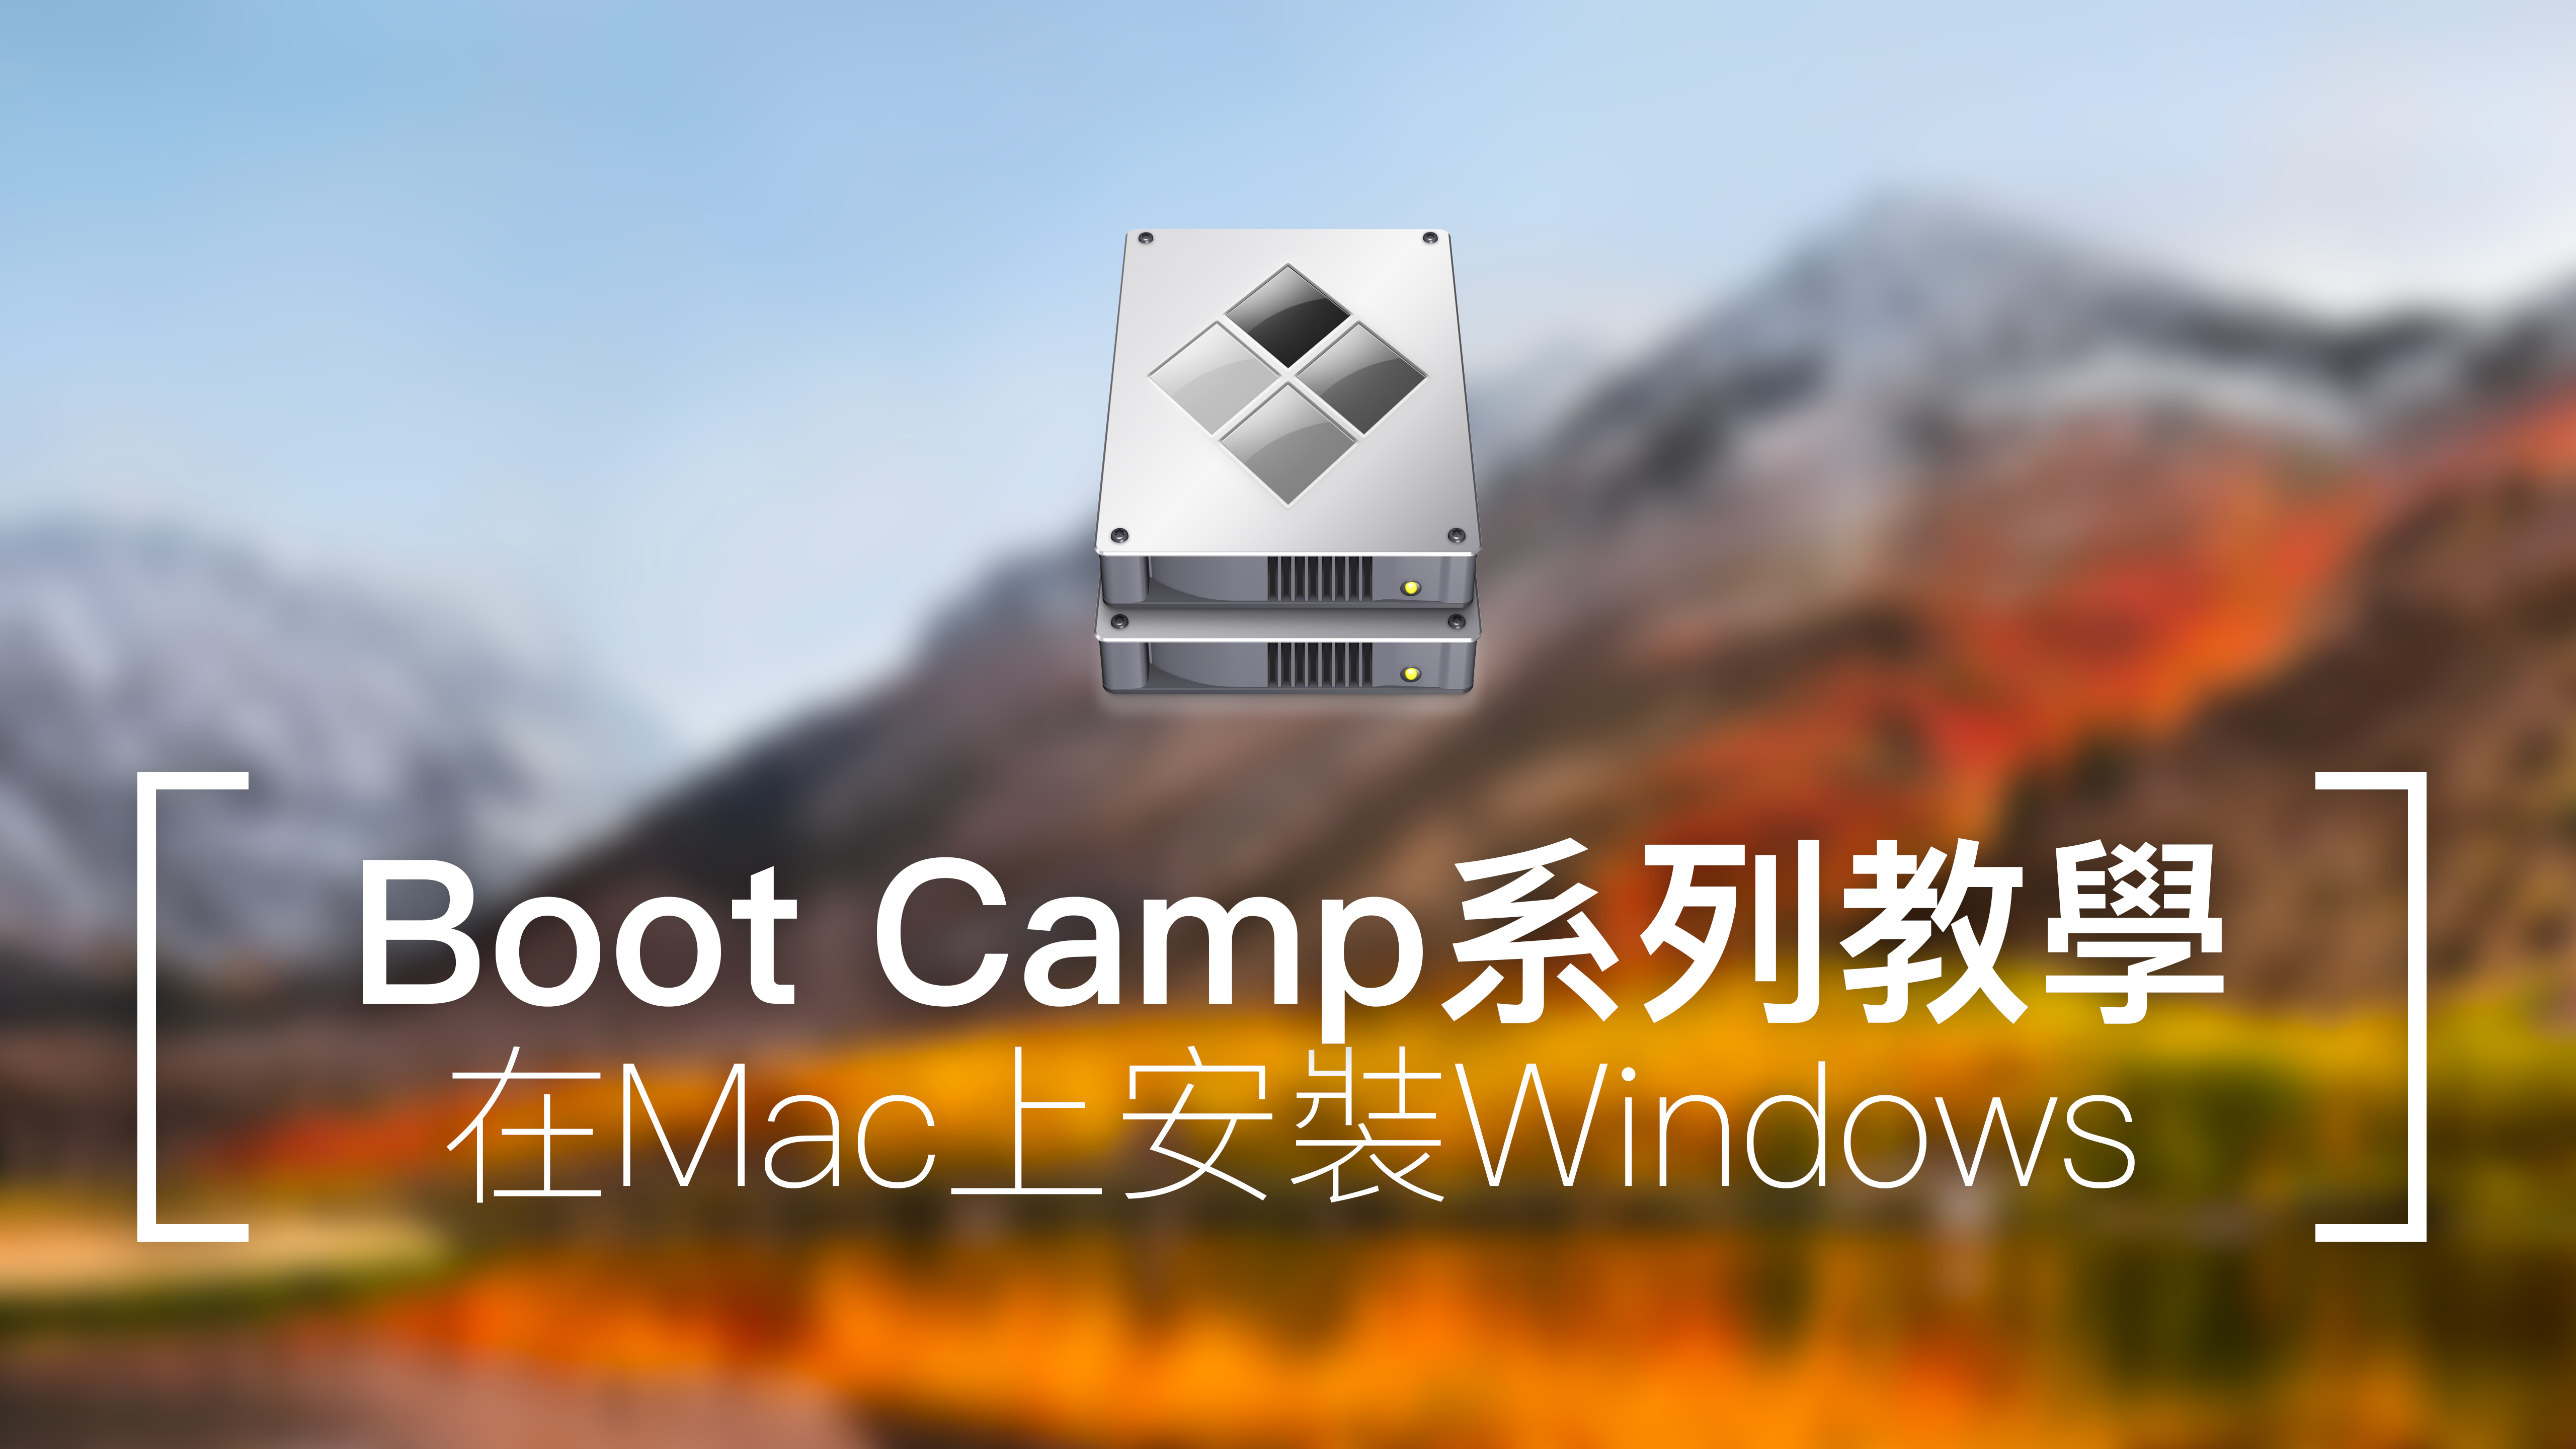 [BootCamp教學] 在Mac上安裝Windows雙系統